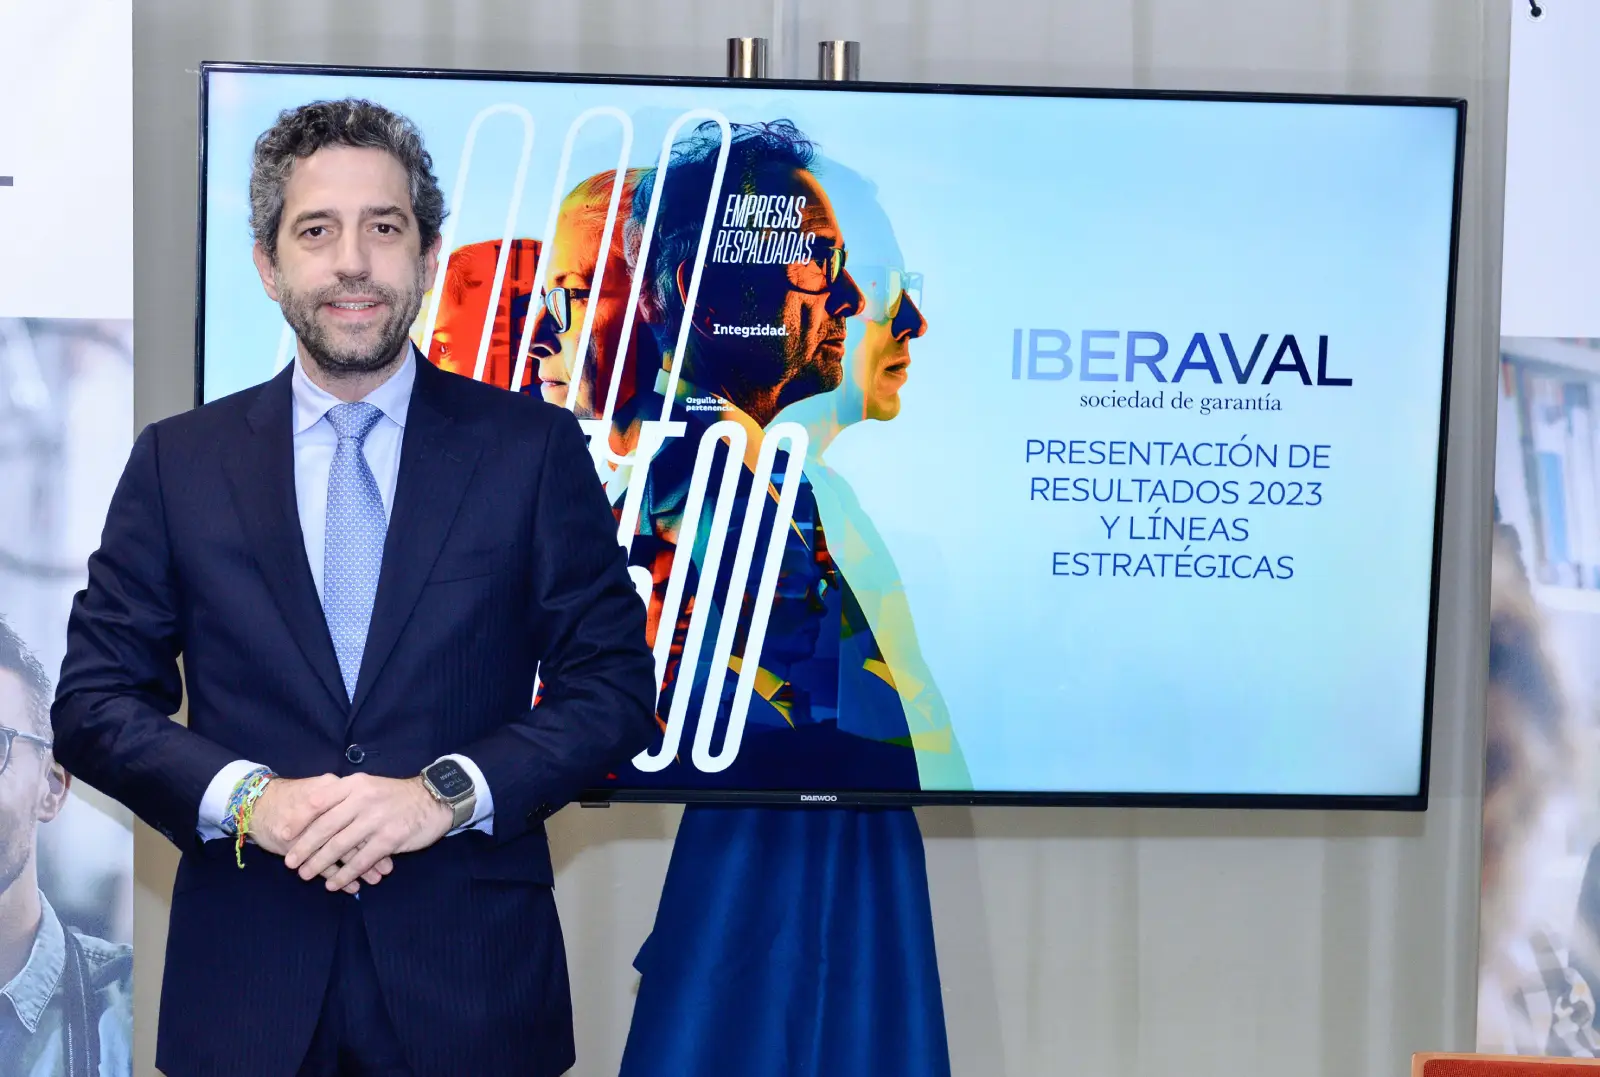 El presidente de Iberaval, César Pontvianne, presenta los Resultados de Iberaval en 2023